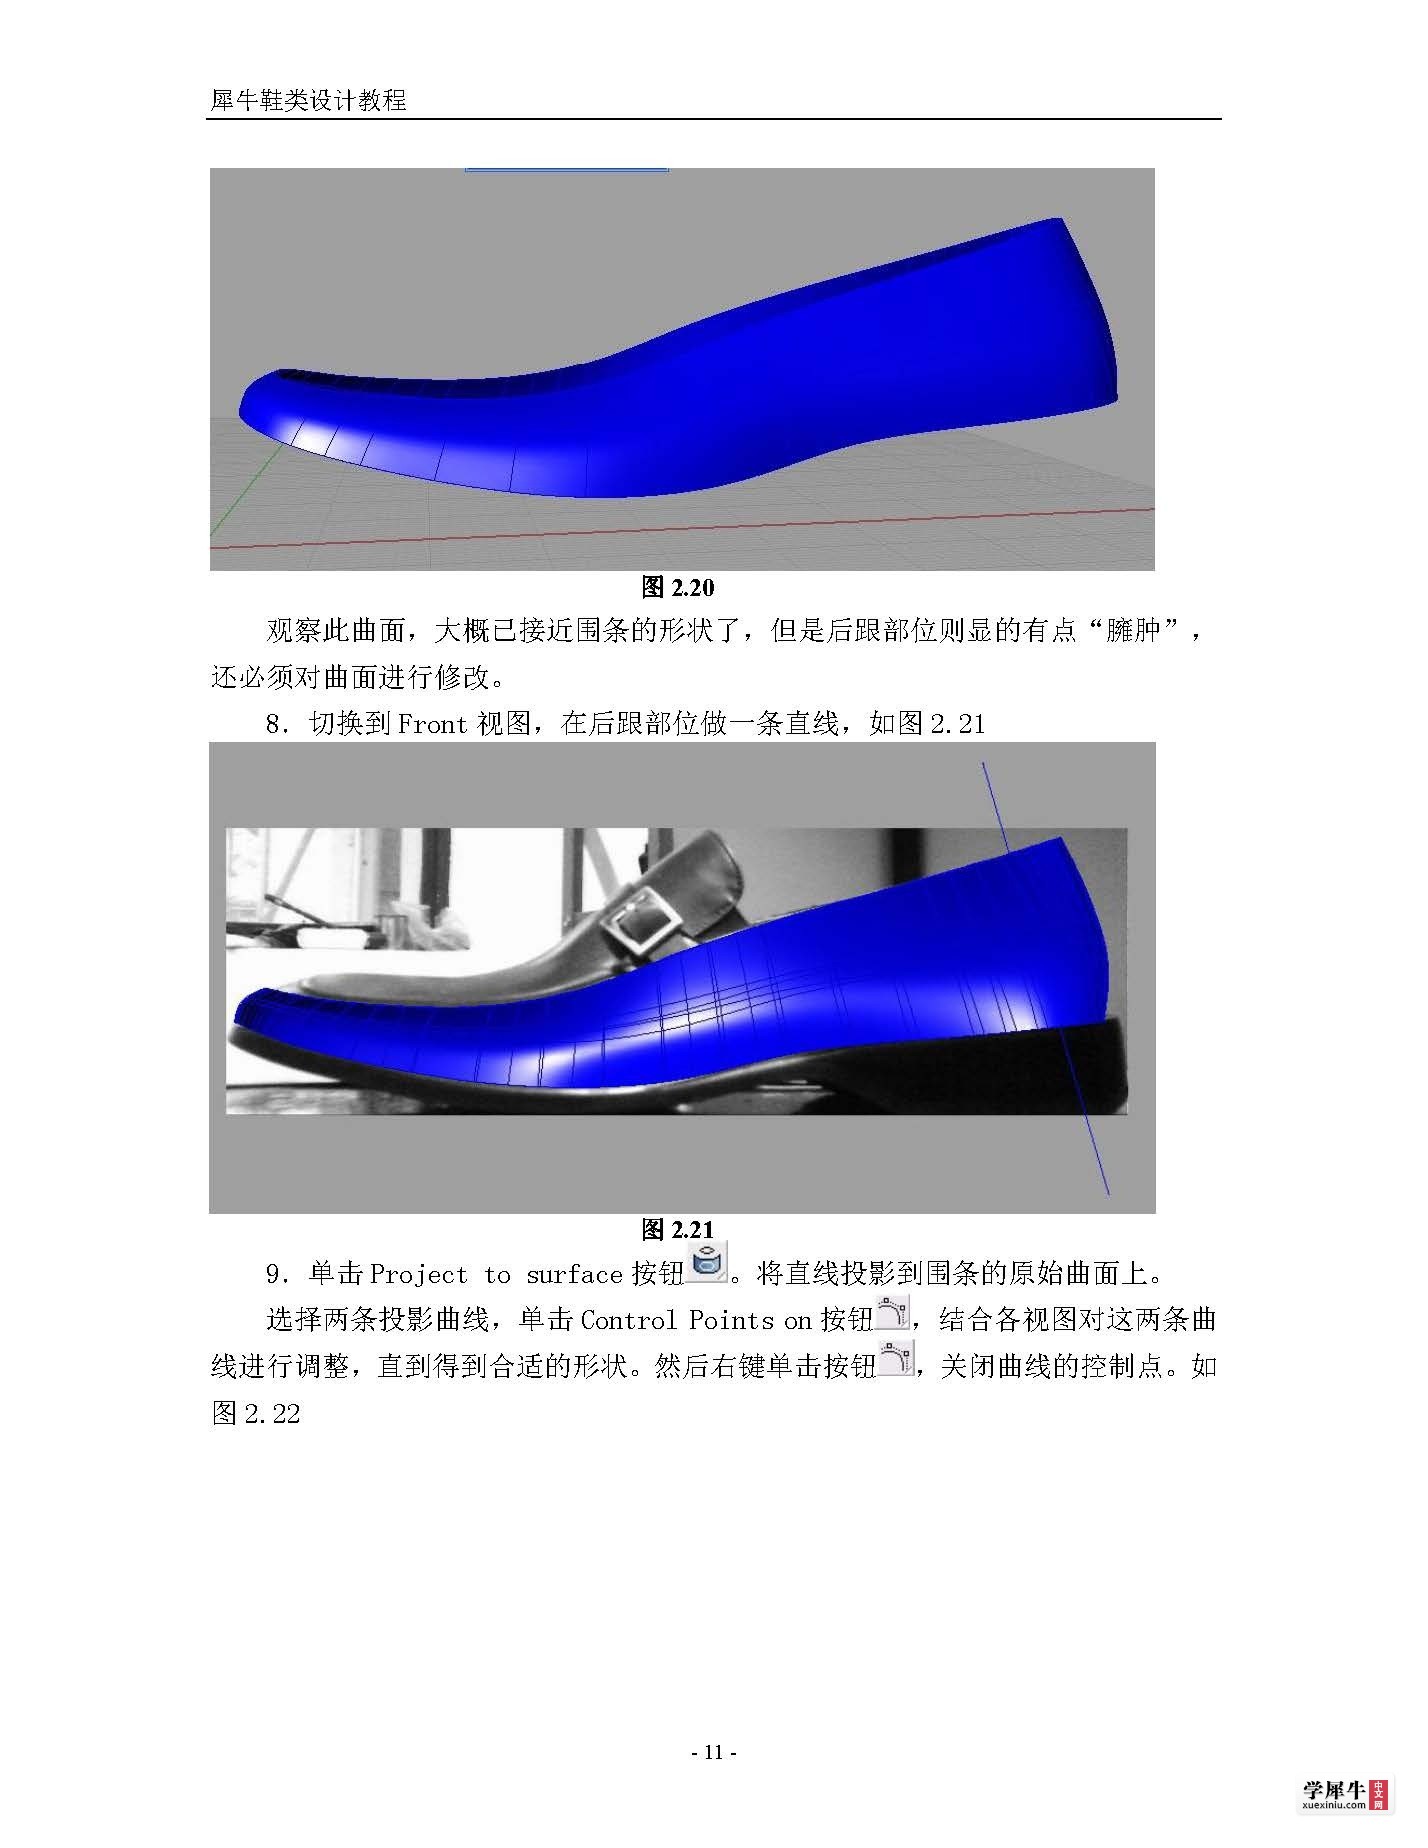 犀牛鞋类建模终极教程(转)_页面_11.jpg